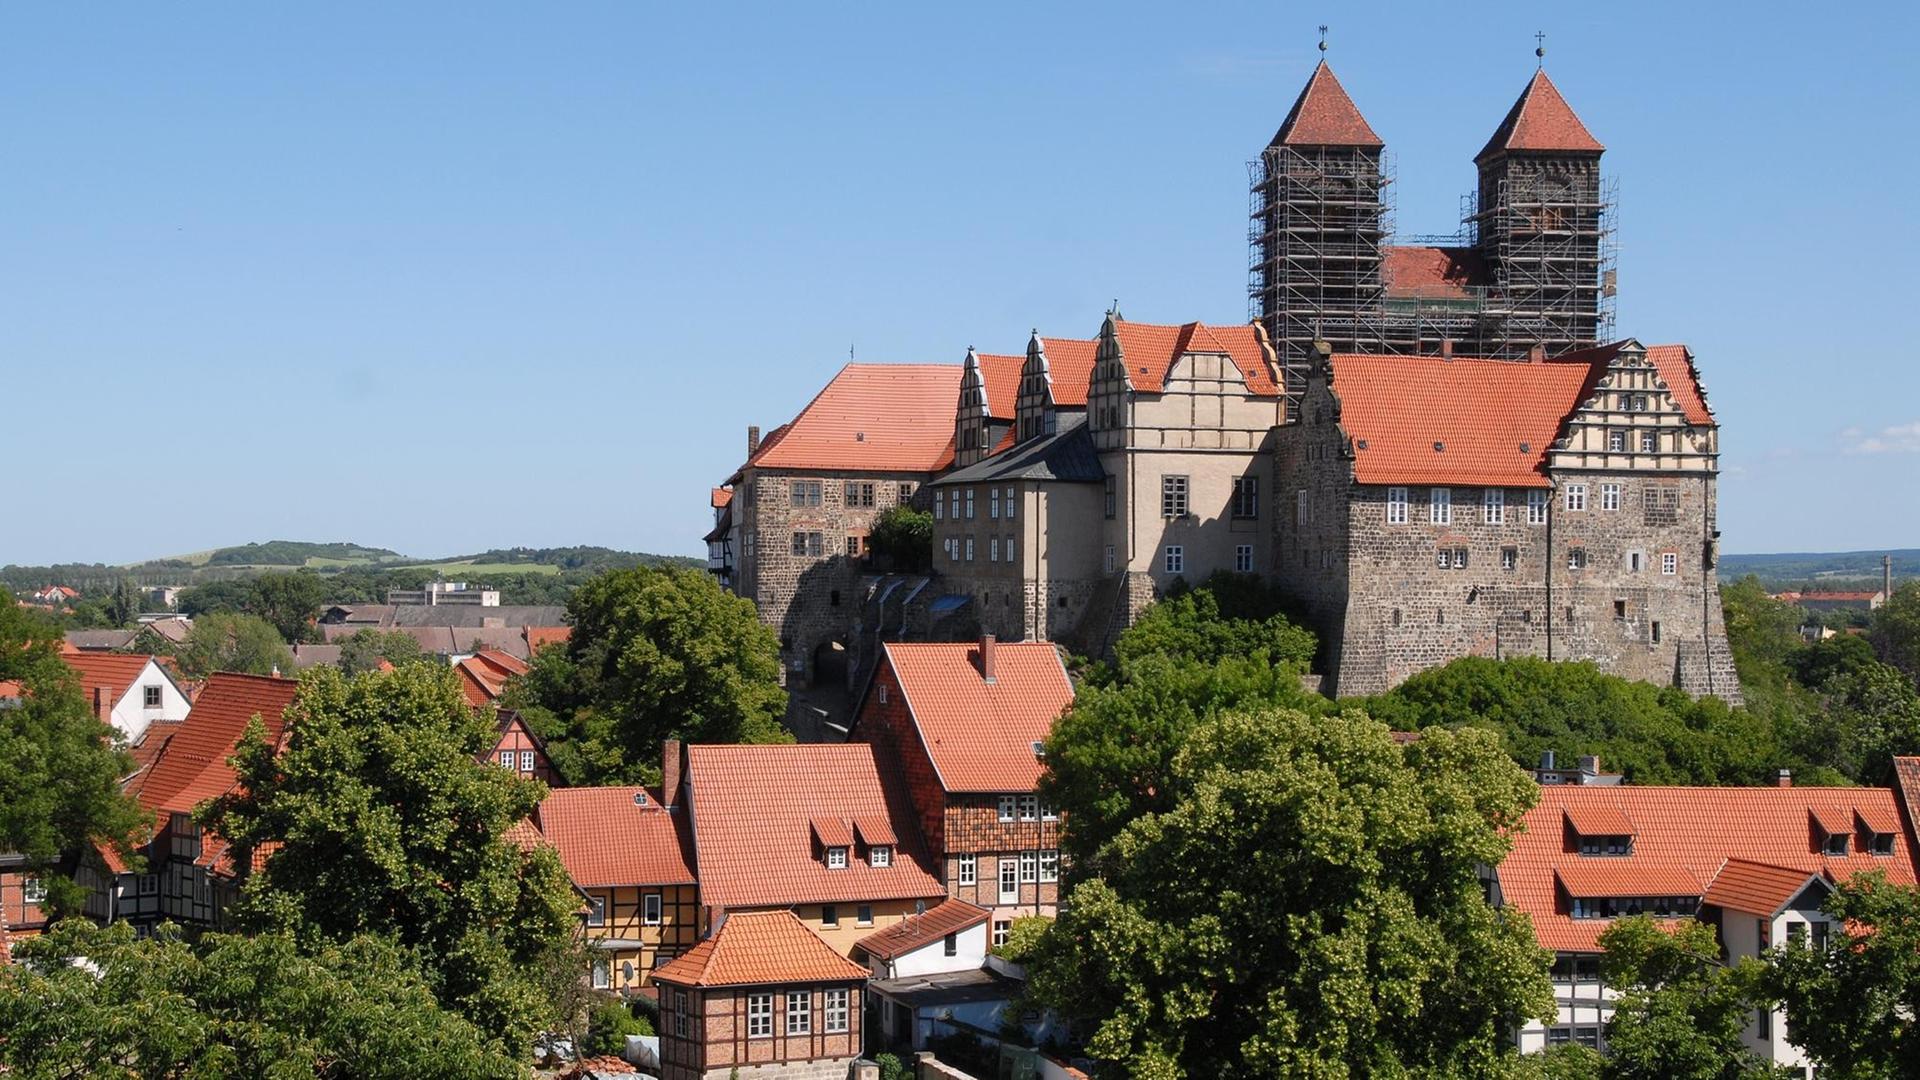 Blick auf das Schloss Quedlinburg mit zur Zeit eingerüsteten Türmen, aufgenommen am 13.06.2009. Über 1.200 Fachwerkhäuser aus sechs Jahrhunderten, der mittelalterliche Stadtgrundriss, Kirchen und Zeugnisse der Romanik sind in der historischen Stadt am Rande des Harz zu finden. Foto: A. Engelhardt +++(c) dpa - Report+++ | Verwendung weltweit